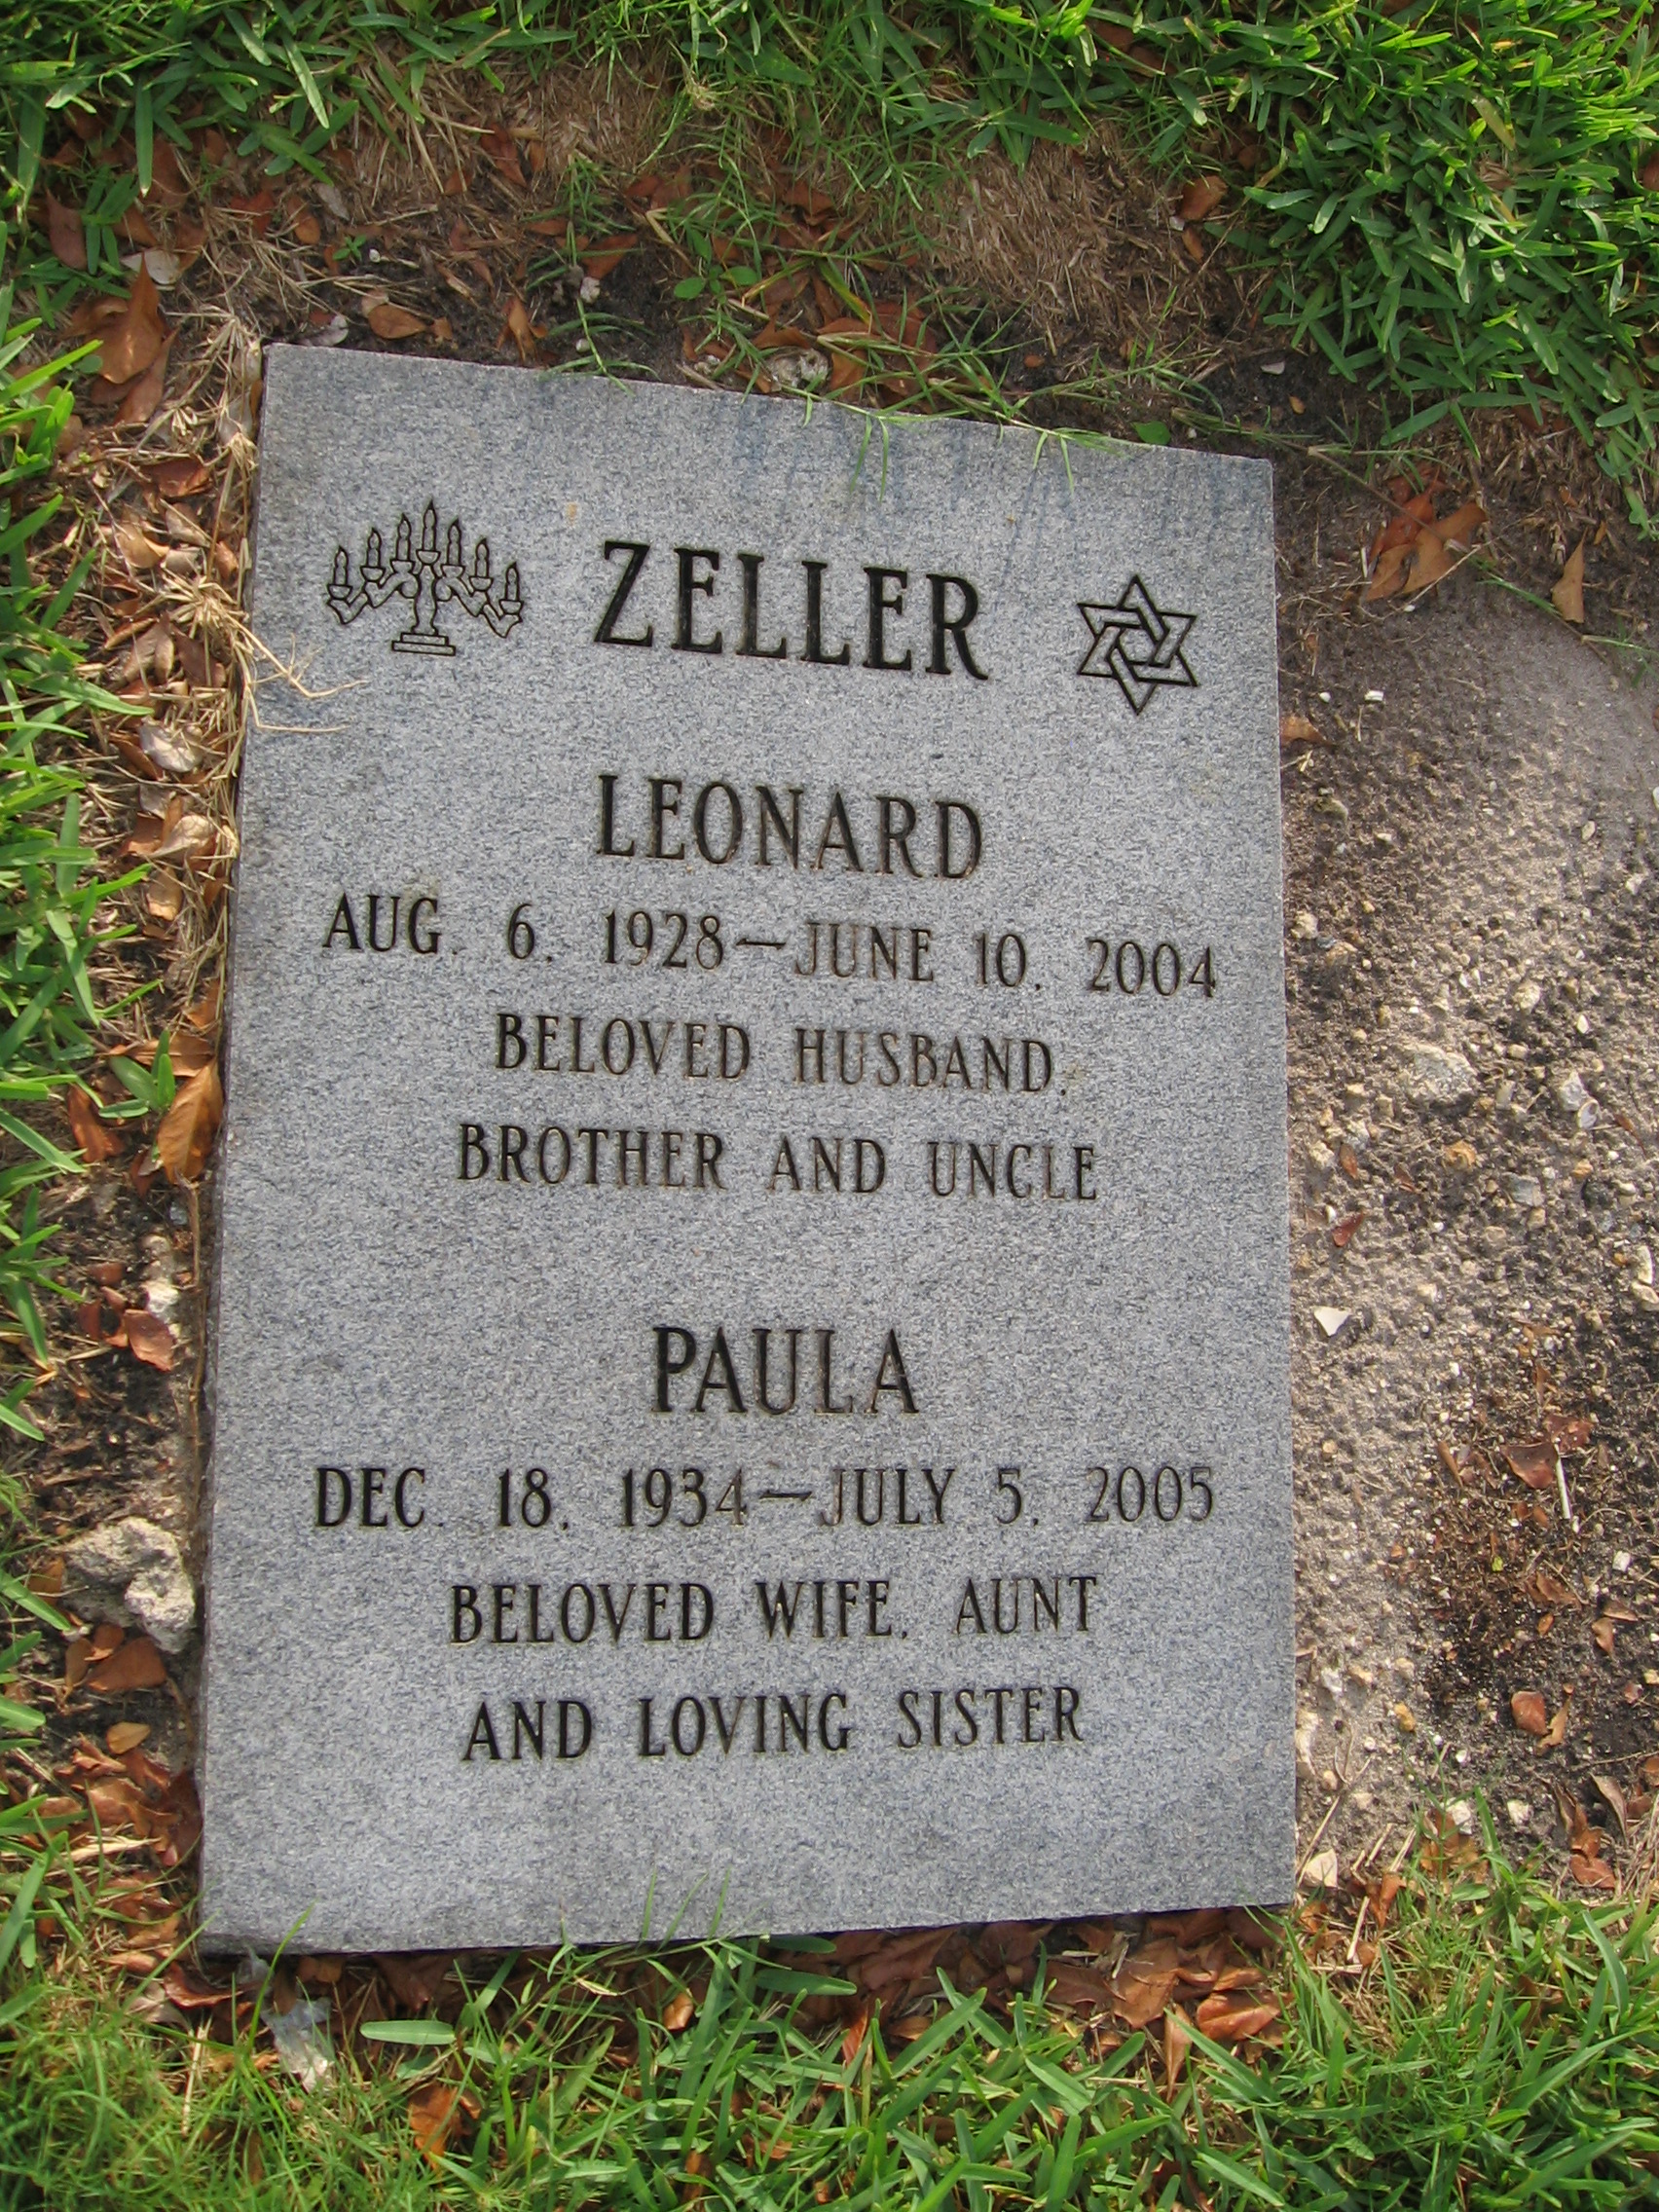 Leonard Zeller